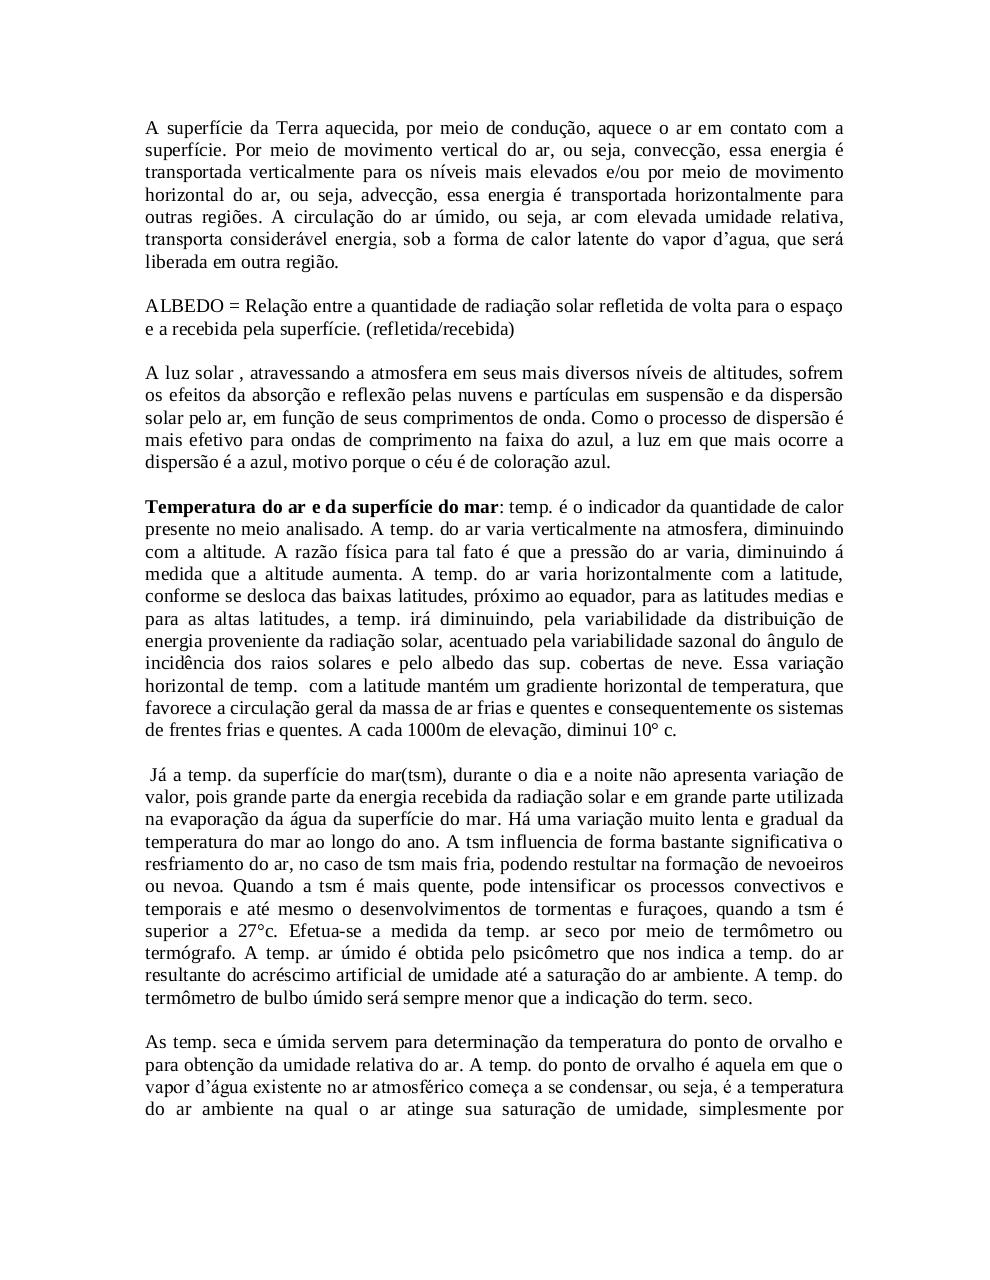 Manual de Metereologia e Oceanografia - 49 pÃ¡gs.pdf - page 3/49